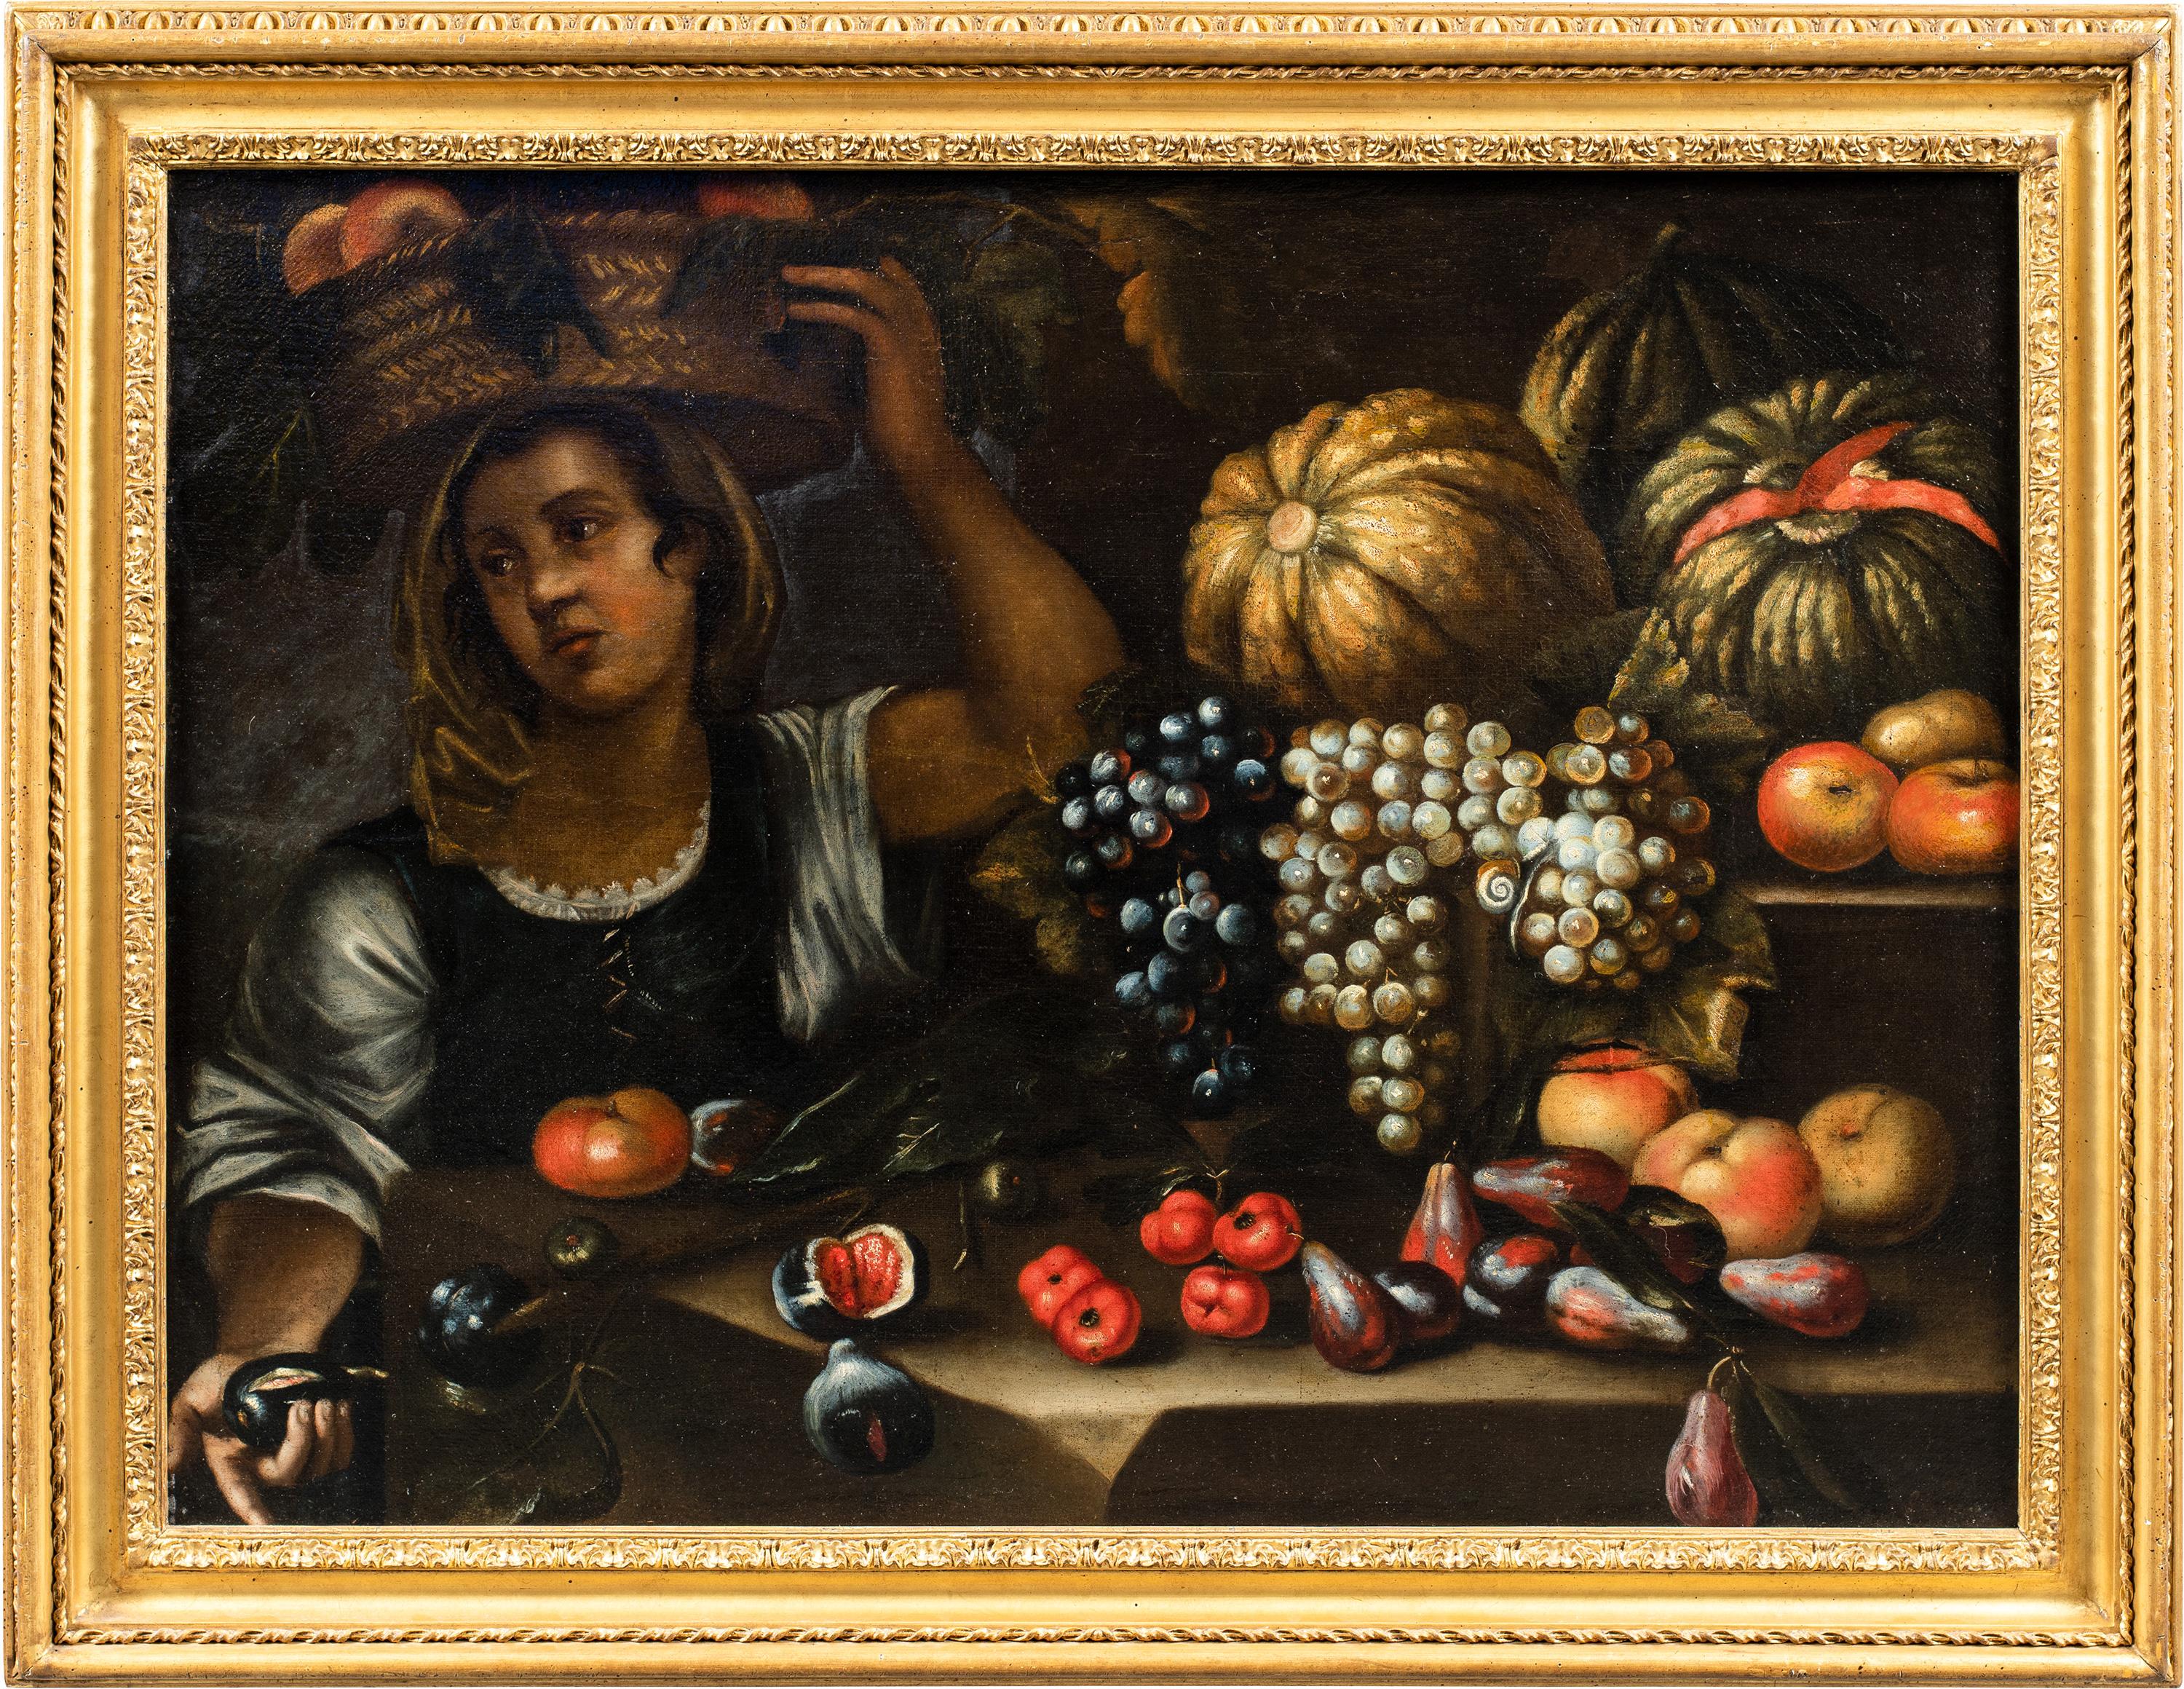 Francesco Annicini (Masterly) Peinture de nature morte du 17e siècle - Marchand de légumes